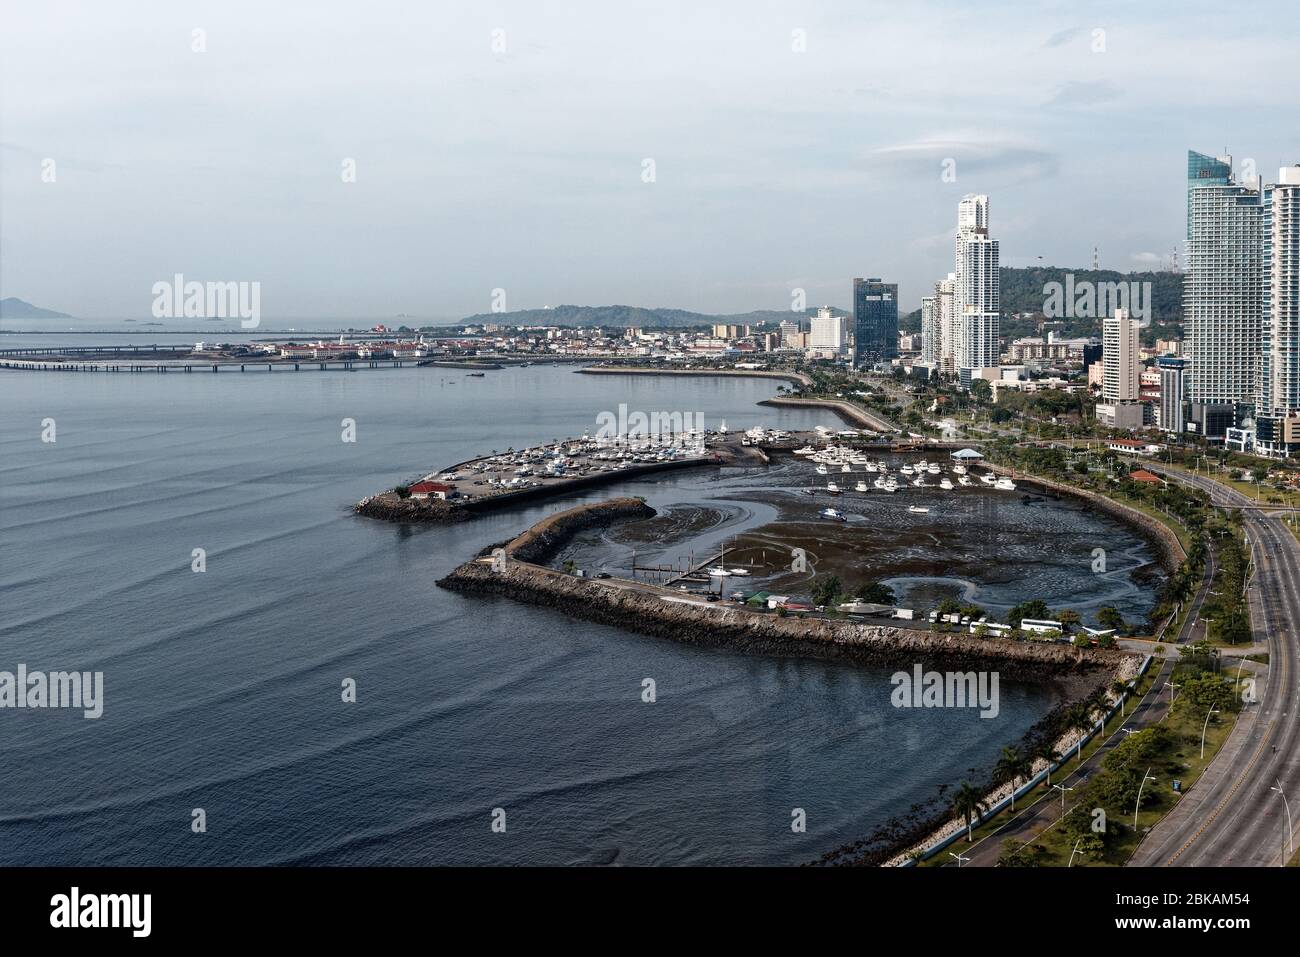 Hohe Gebäude des Finanzviertels überblicken den Mirador Del Pacifico und den Ozean, Panama-Stadt, panama, Mittelamerika Stockfoto